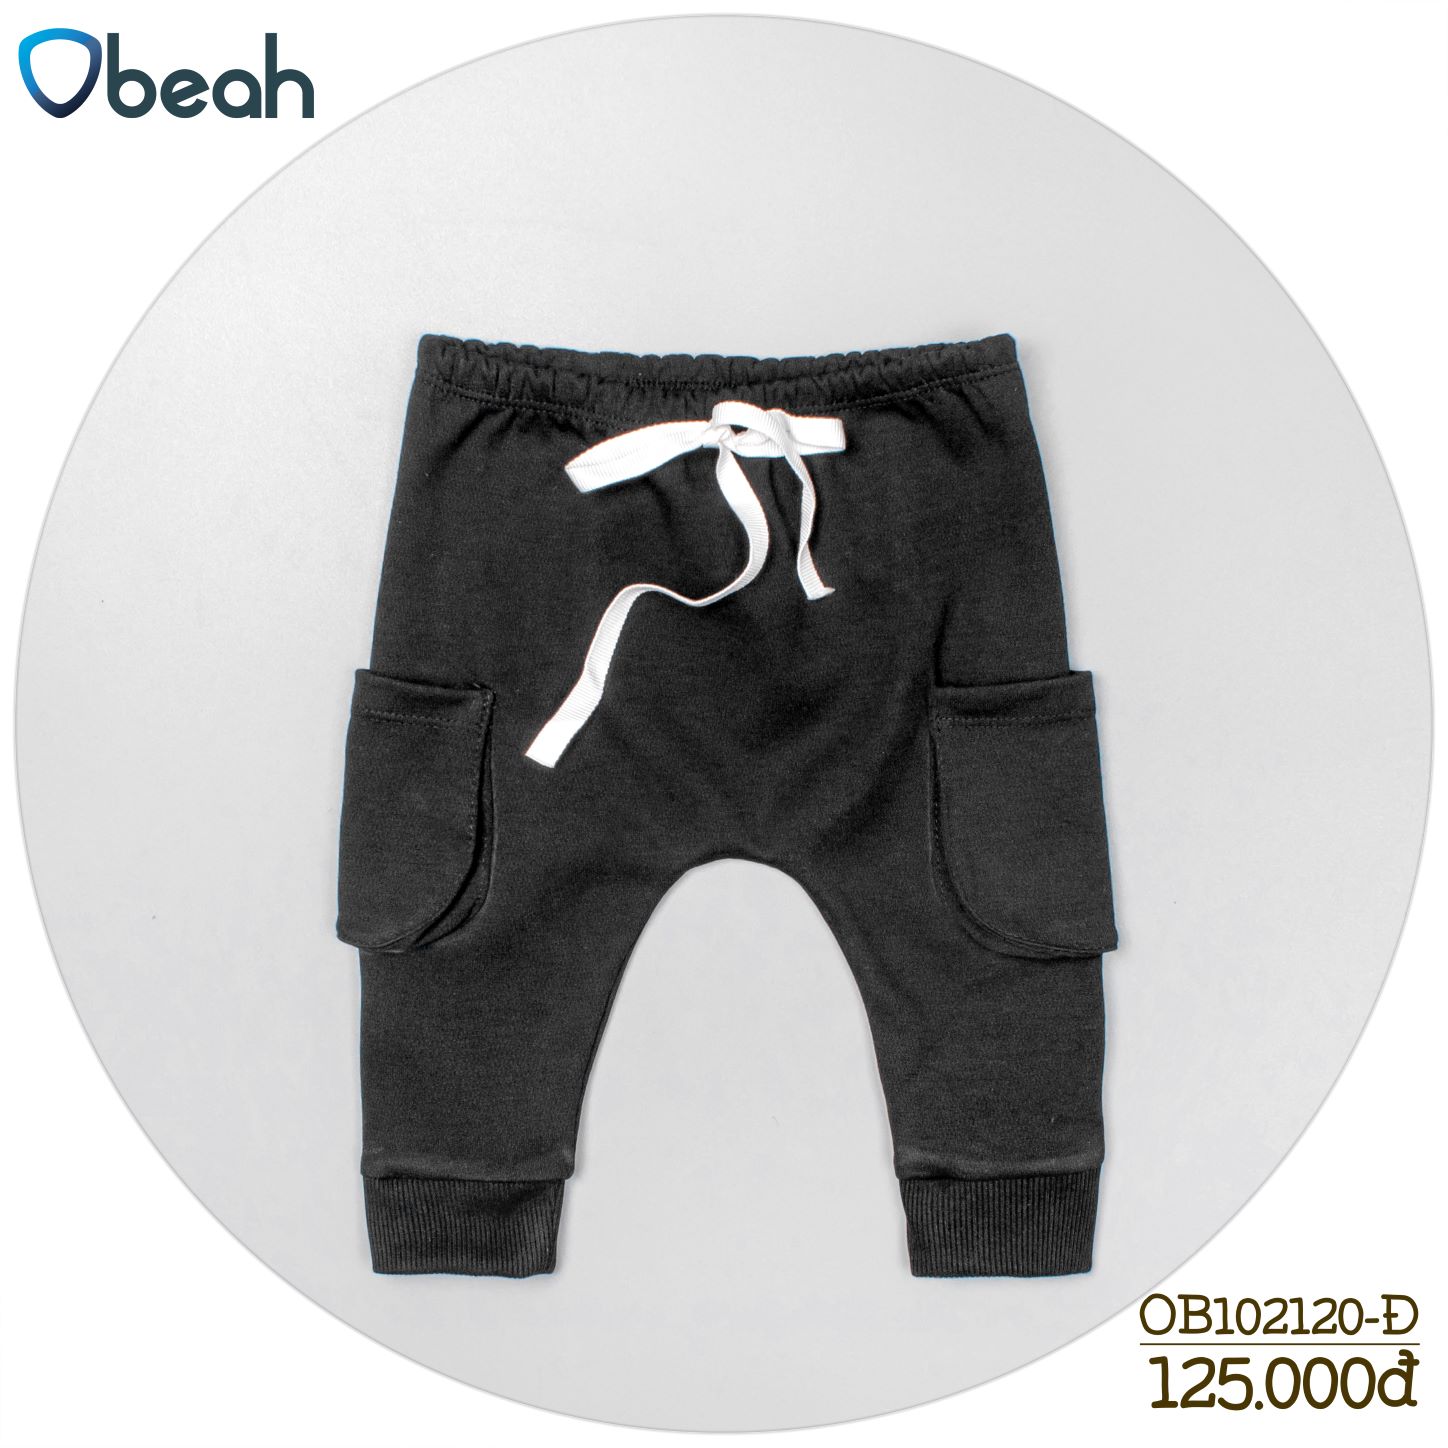 Quần jogger Obeah túi hộp hai màu đen ghi Fullsize 59 đến 90 cho bé trai